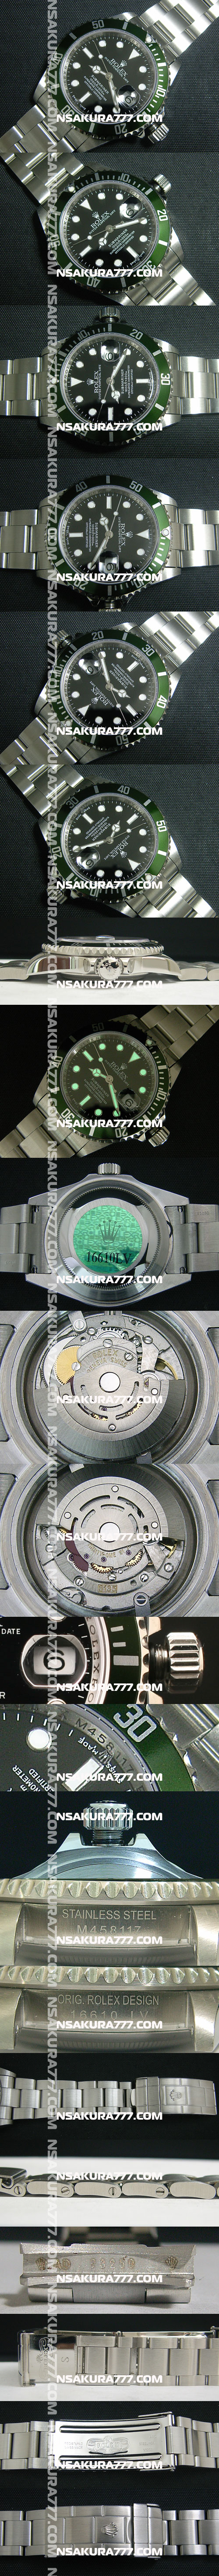 レプリカ時計ロレックス サブマリーナ Rolex 3135 28800振動 - ウインドウを閉じる